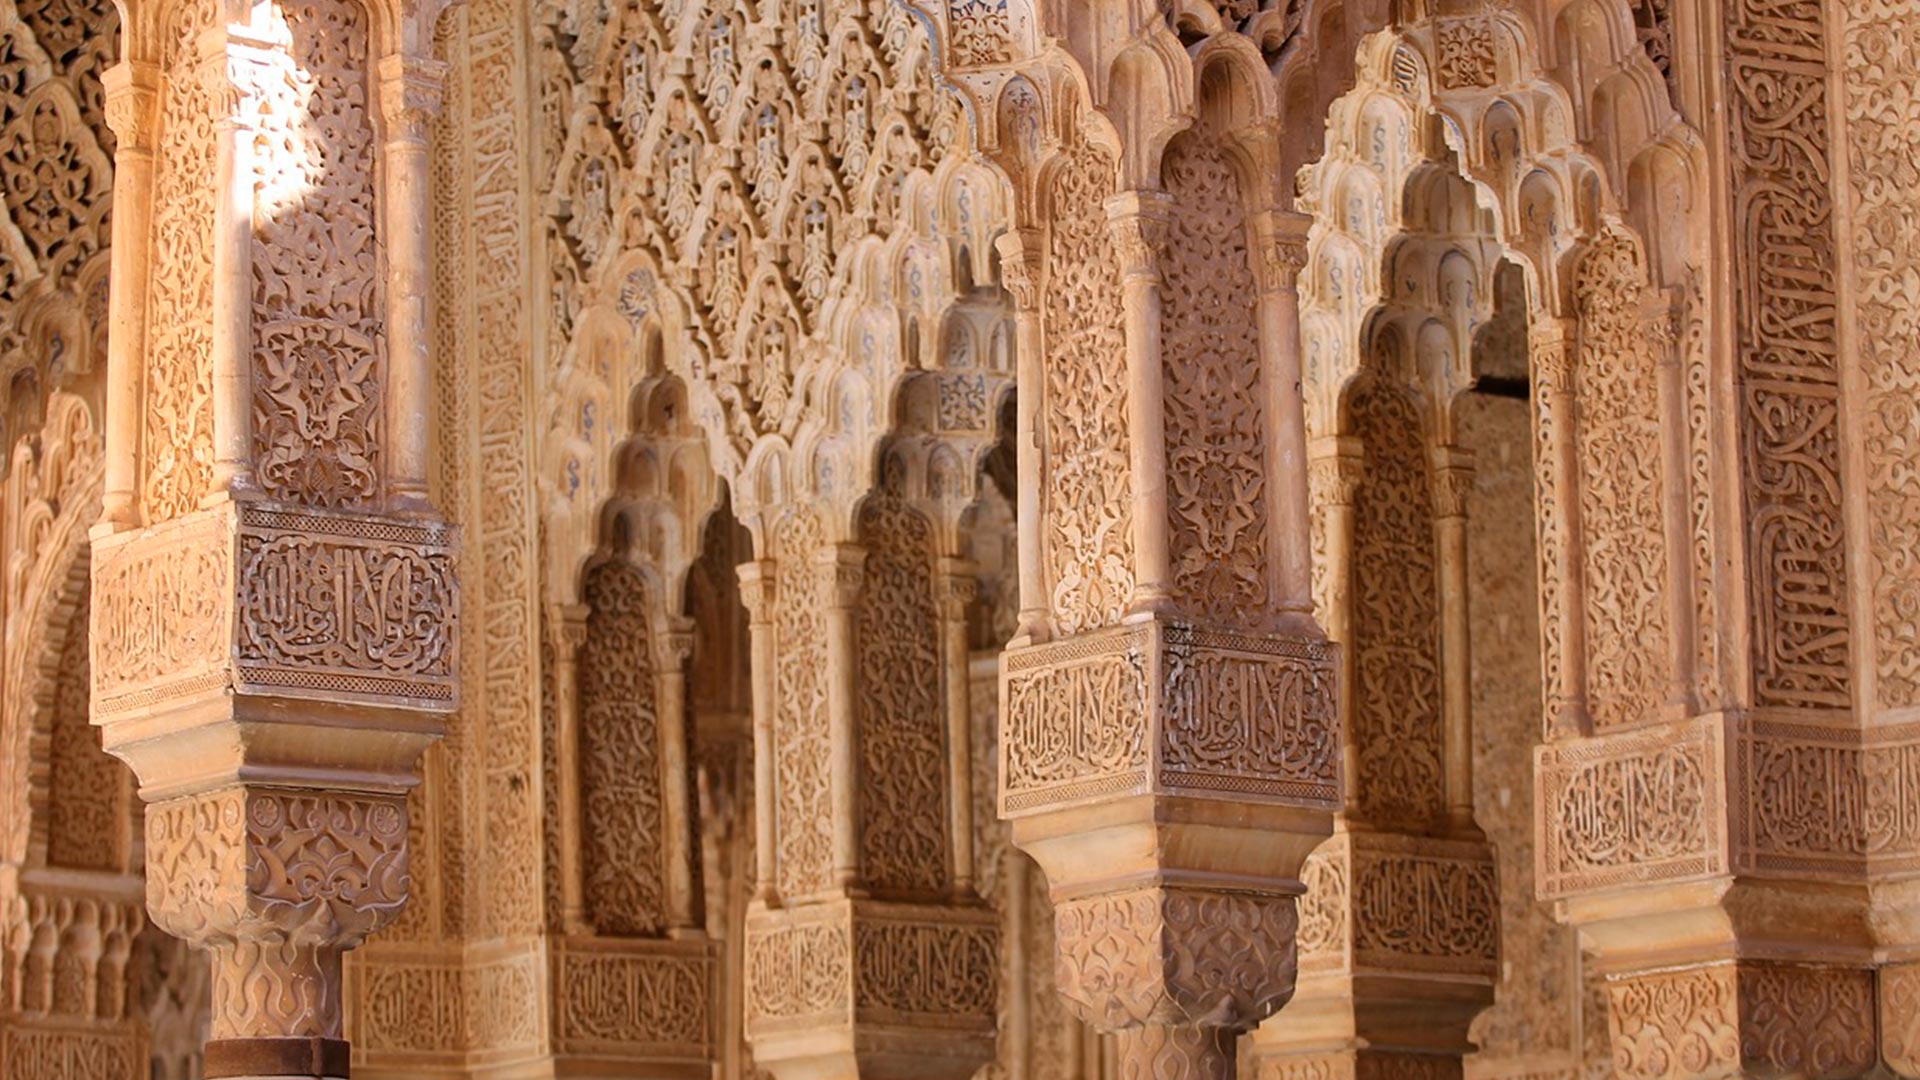 Decoraciones y tallados de yeso sobre las columnas y paredes de la Alhambra